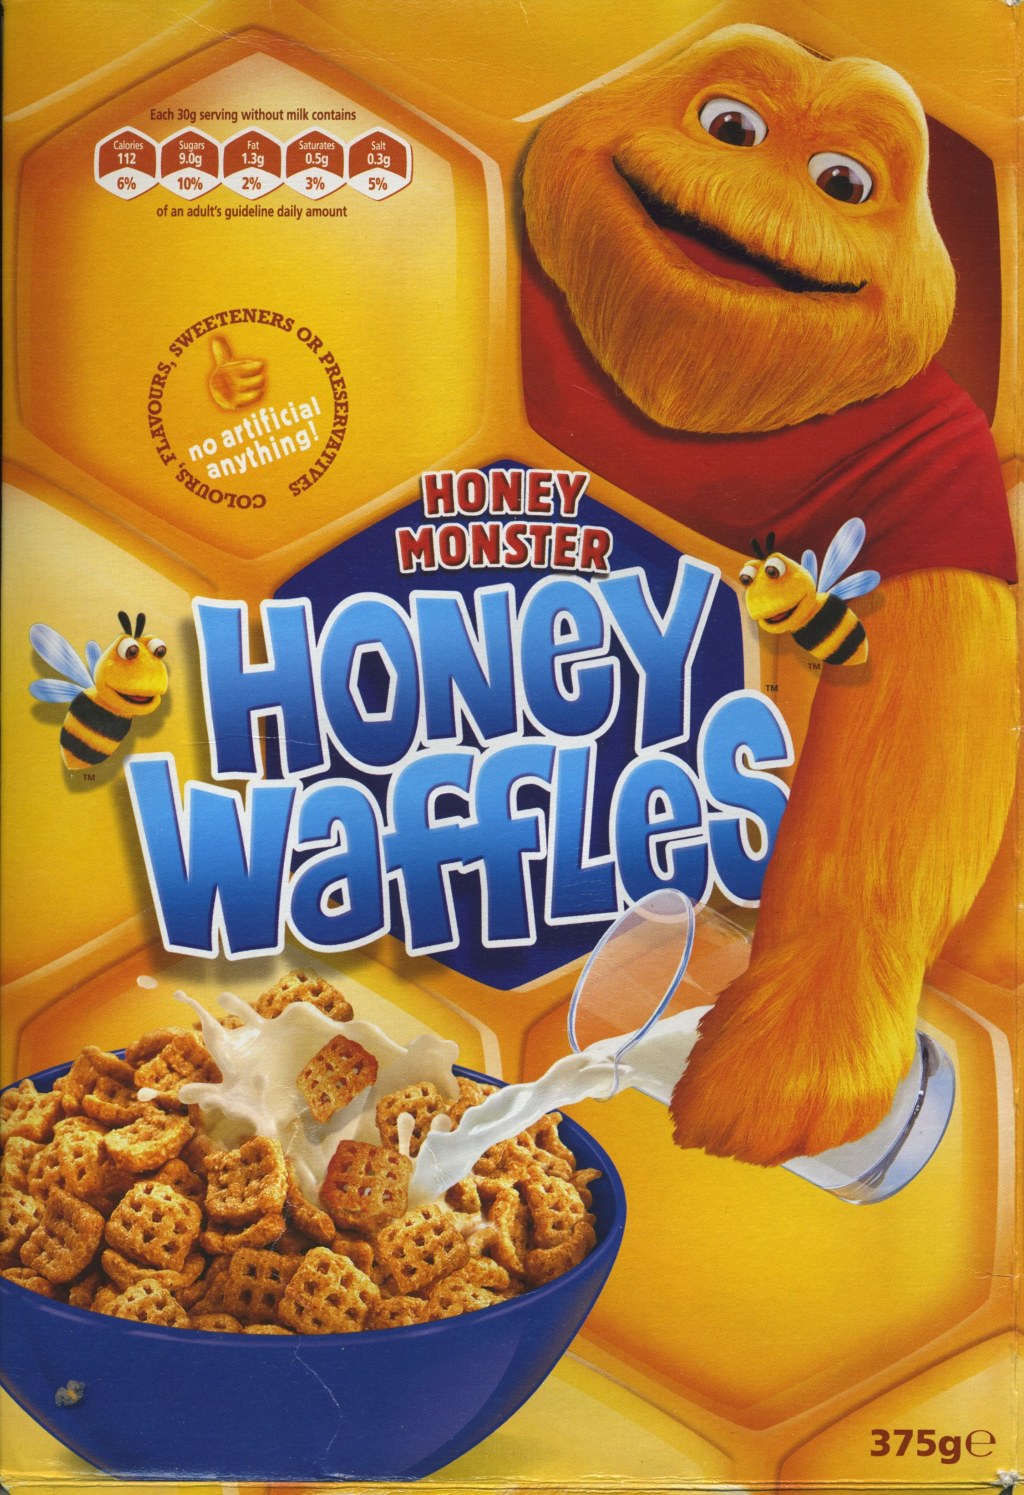 Picture of: Honey Waffles © Honey Monster Foods Ltd